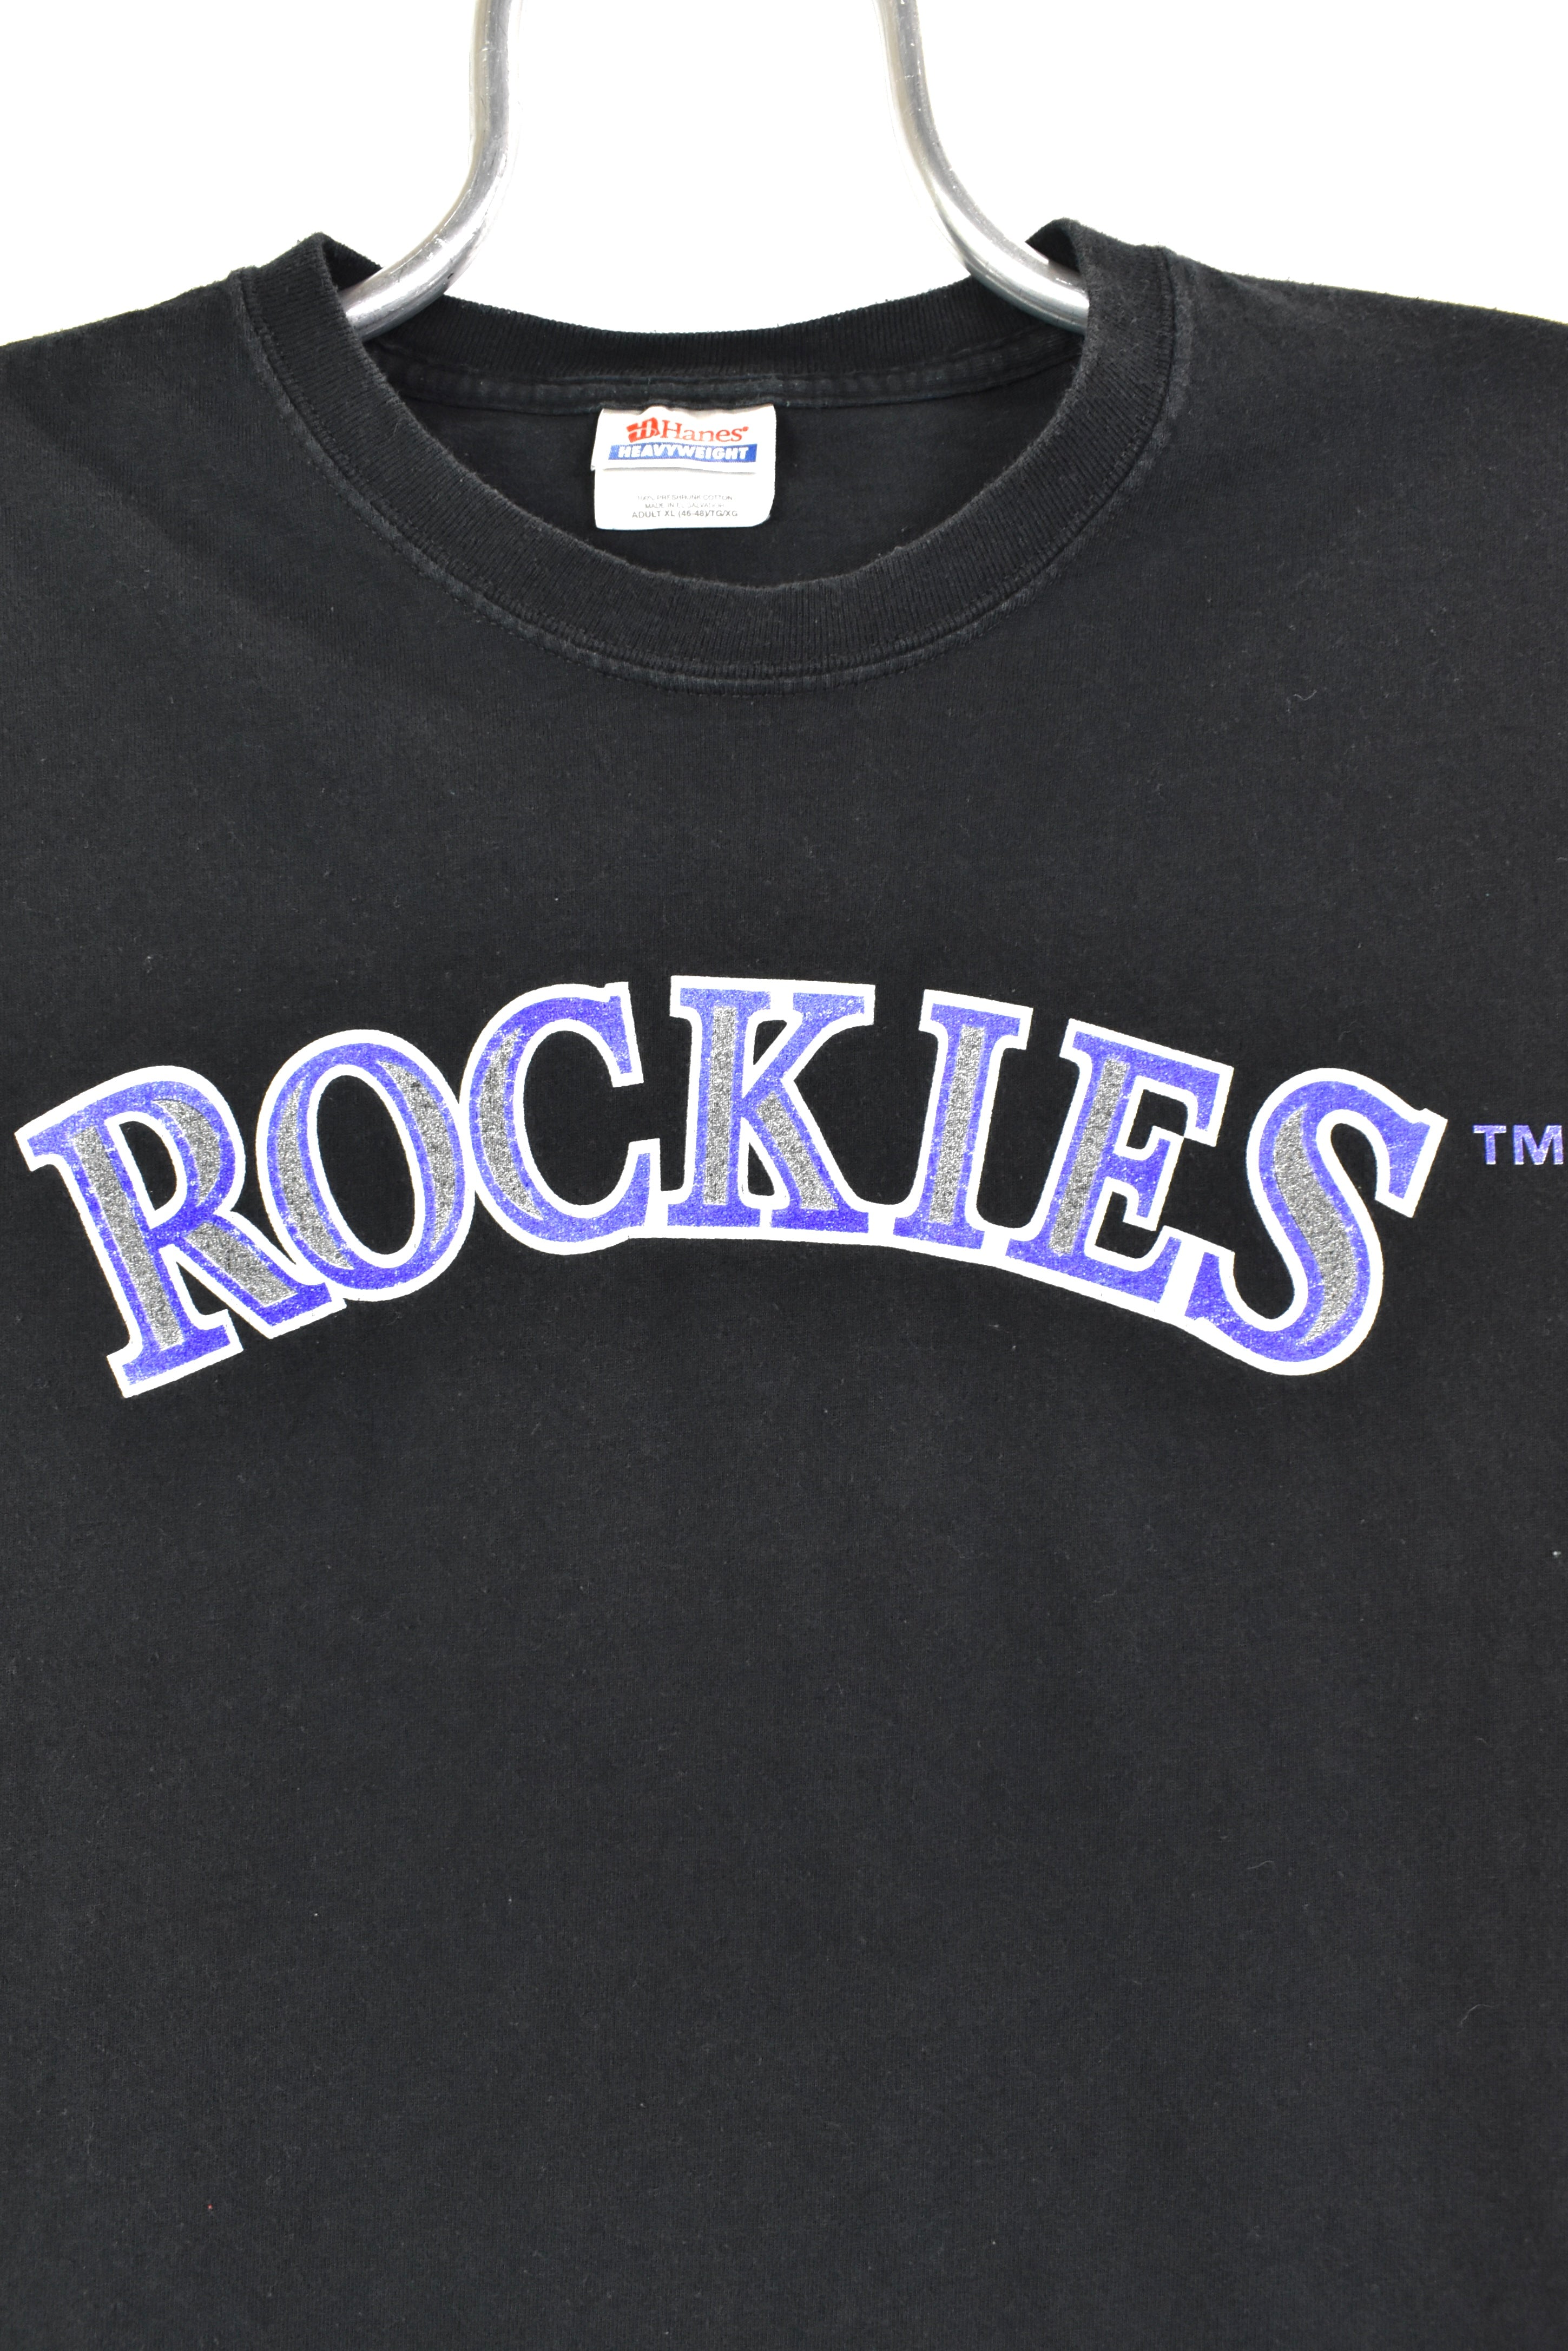 Vintage Colorado Rockie Crewneck Sweatshirt / T-shirt Rockies 